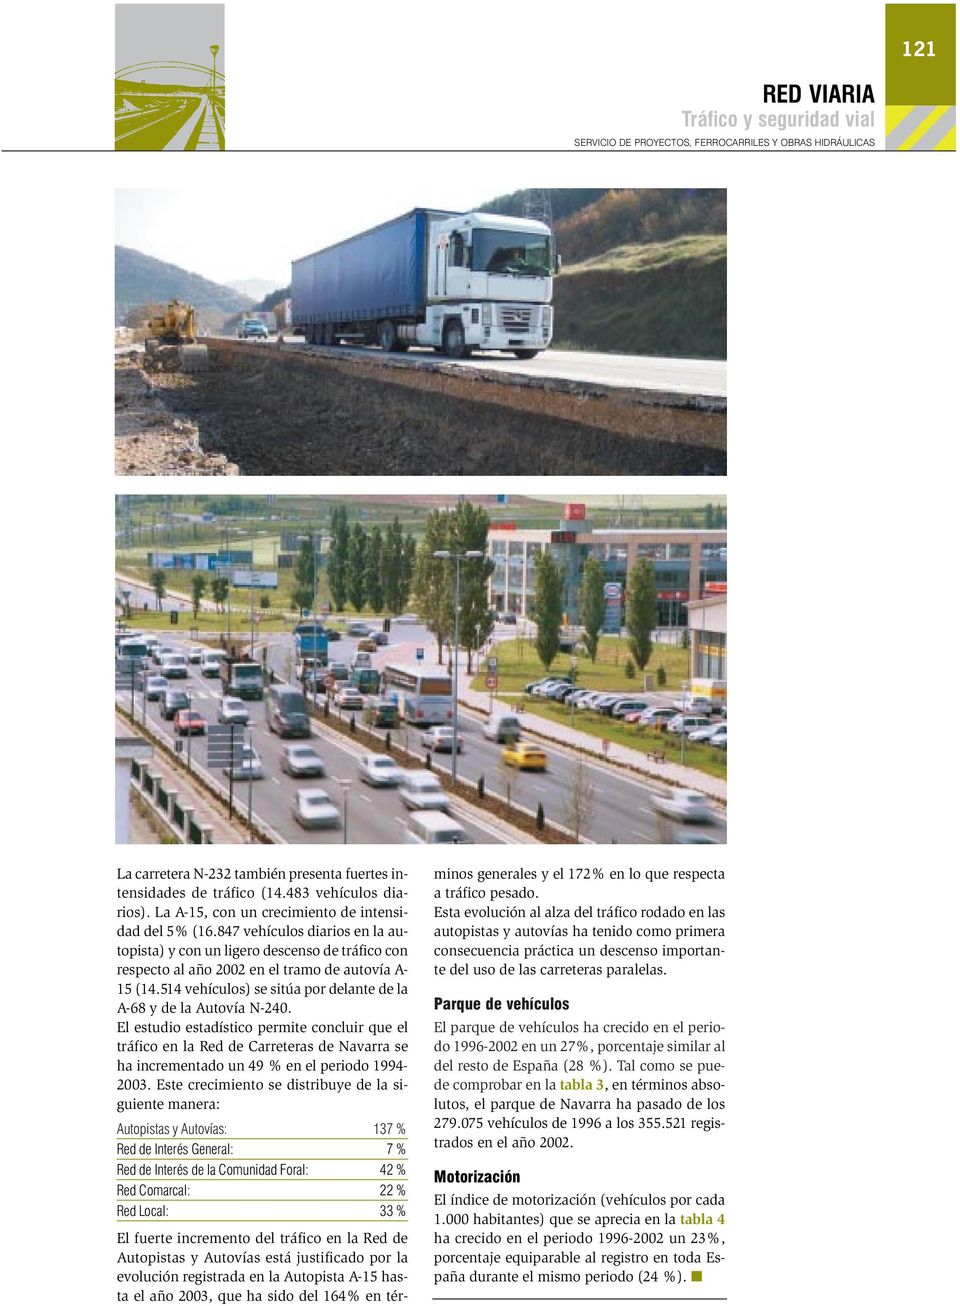 El estudio estadístico permite concluir que el tráfico en la Red de Carreteras de Navarra se ha incrementado un 49 % en el periodo 1994-23.